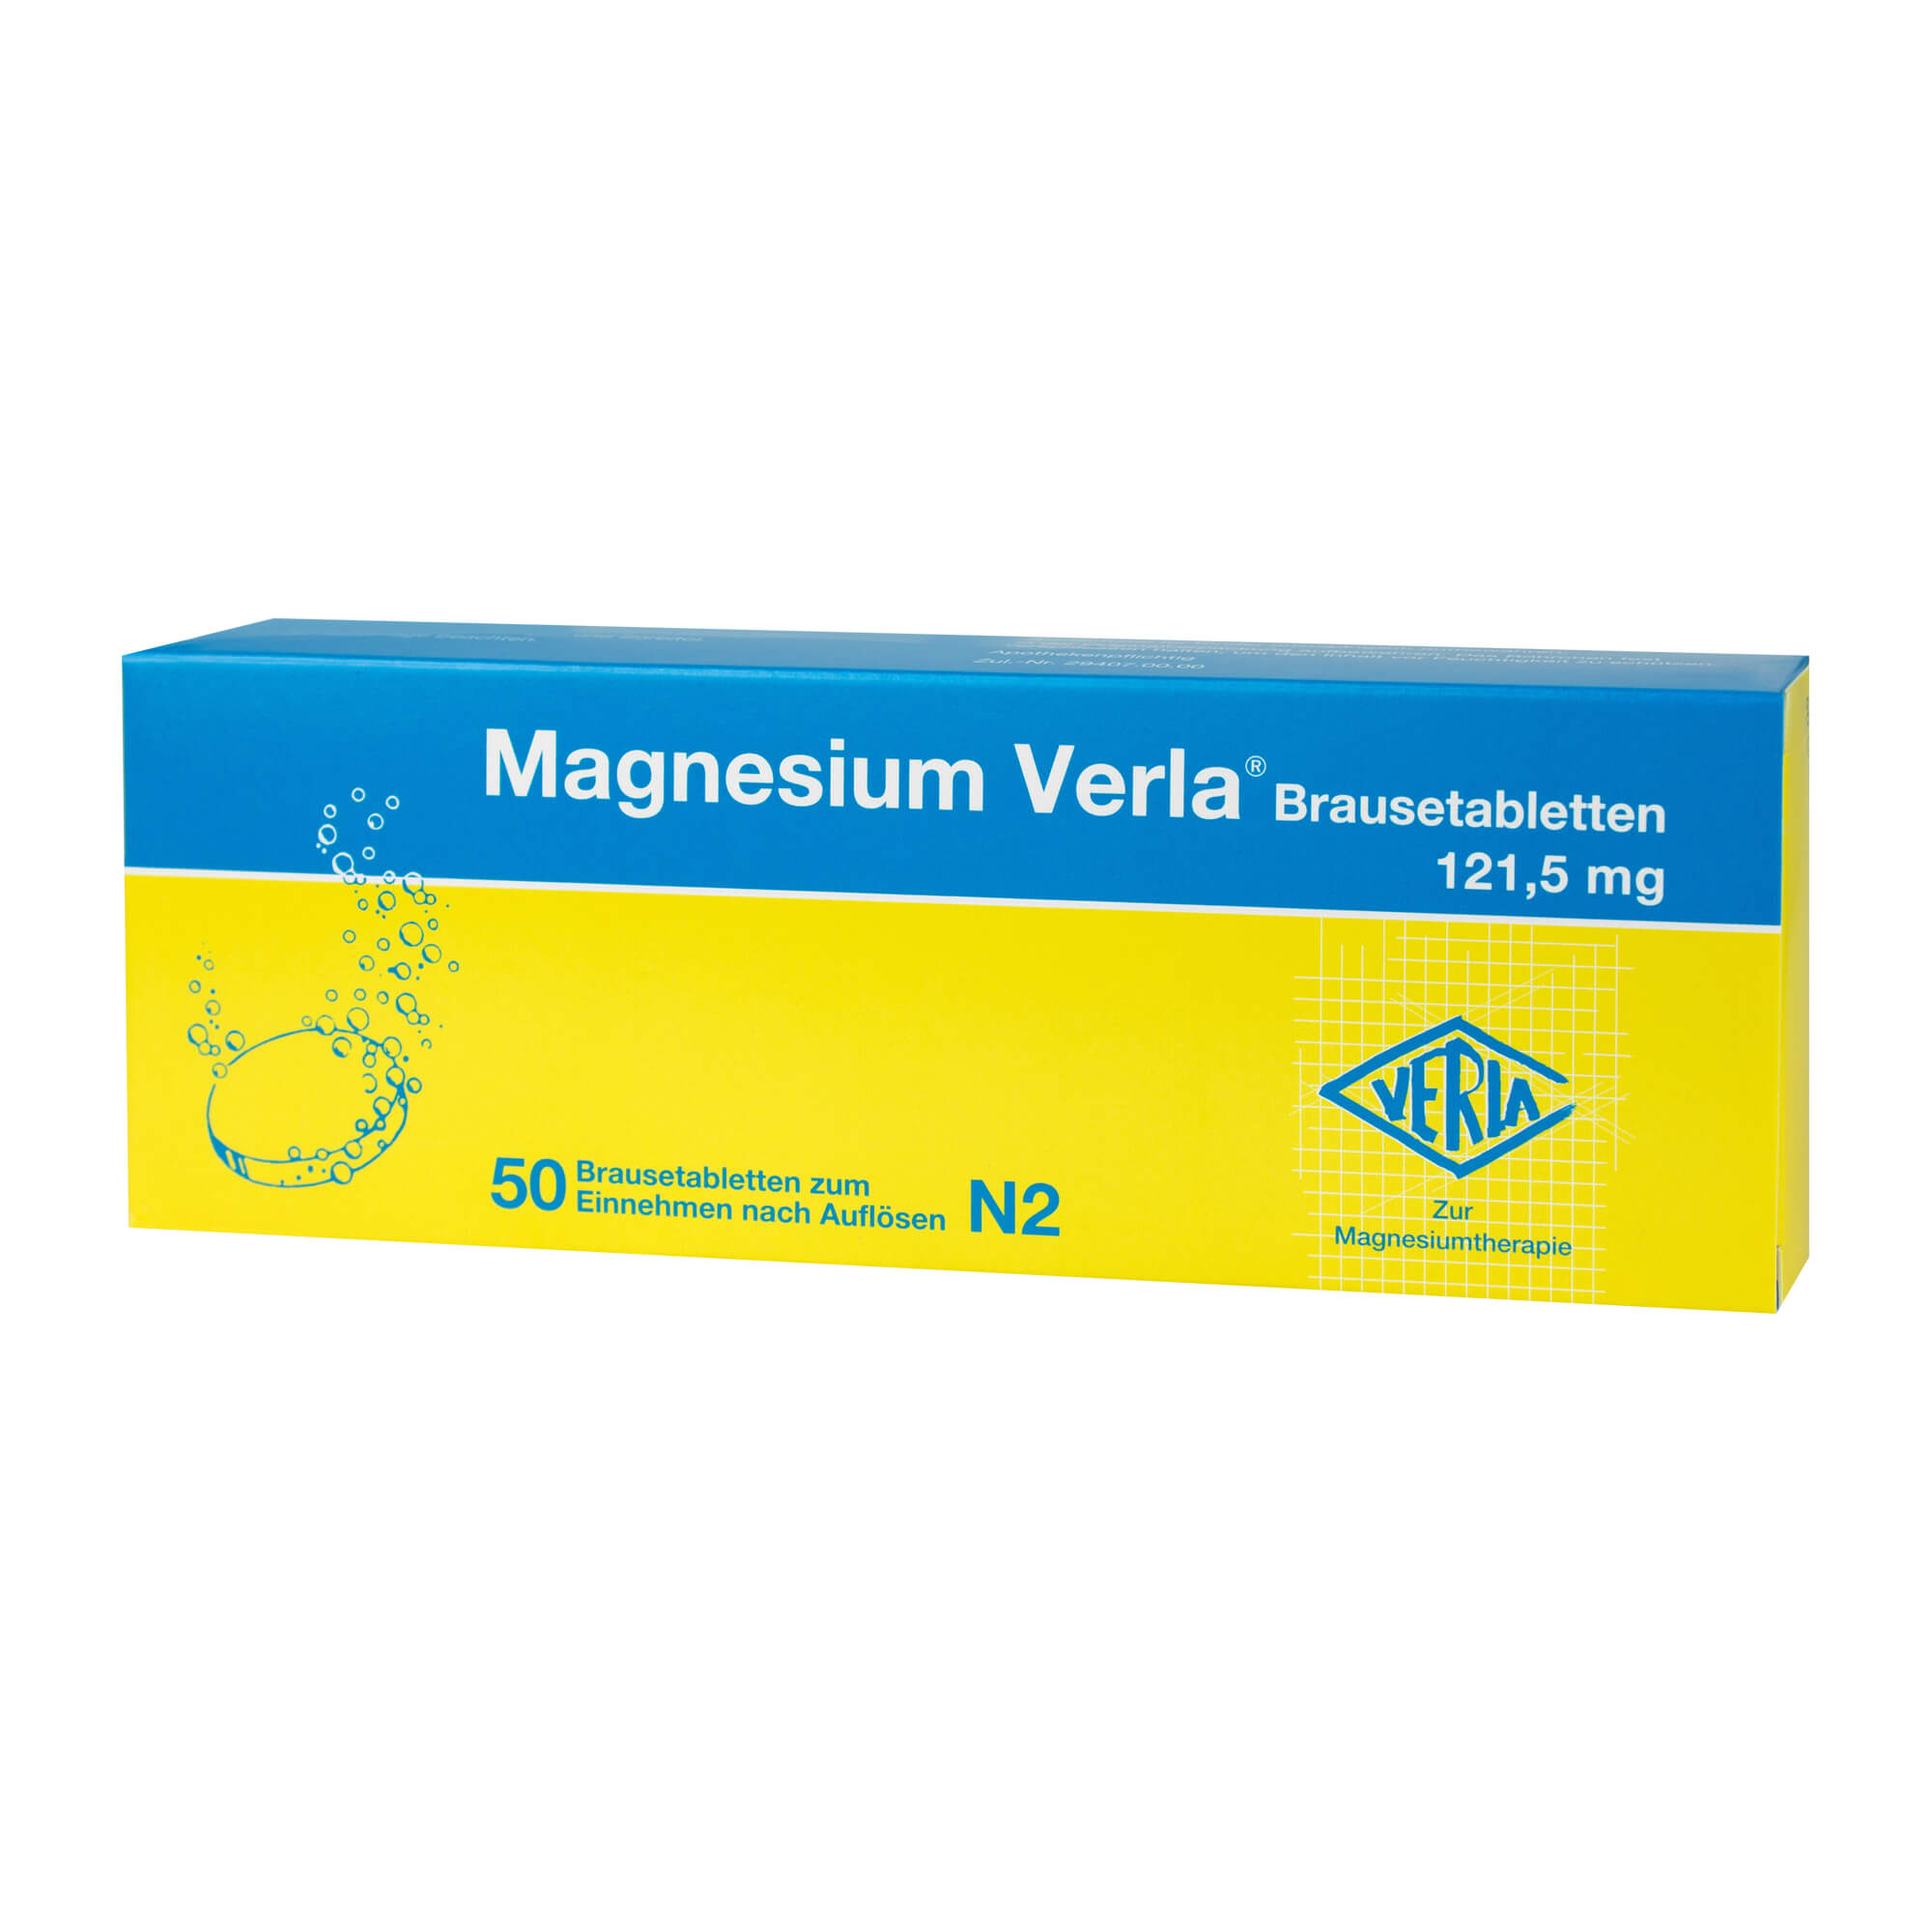 Behandlung von therapiebedürftigen Magnesium-Mangelzuständen, die keiner Injektion/Infusion bedürfen.